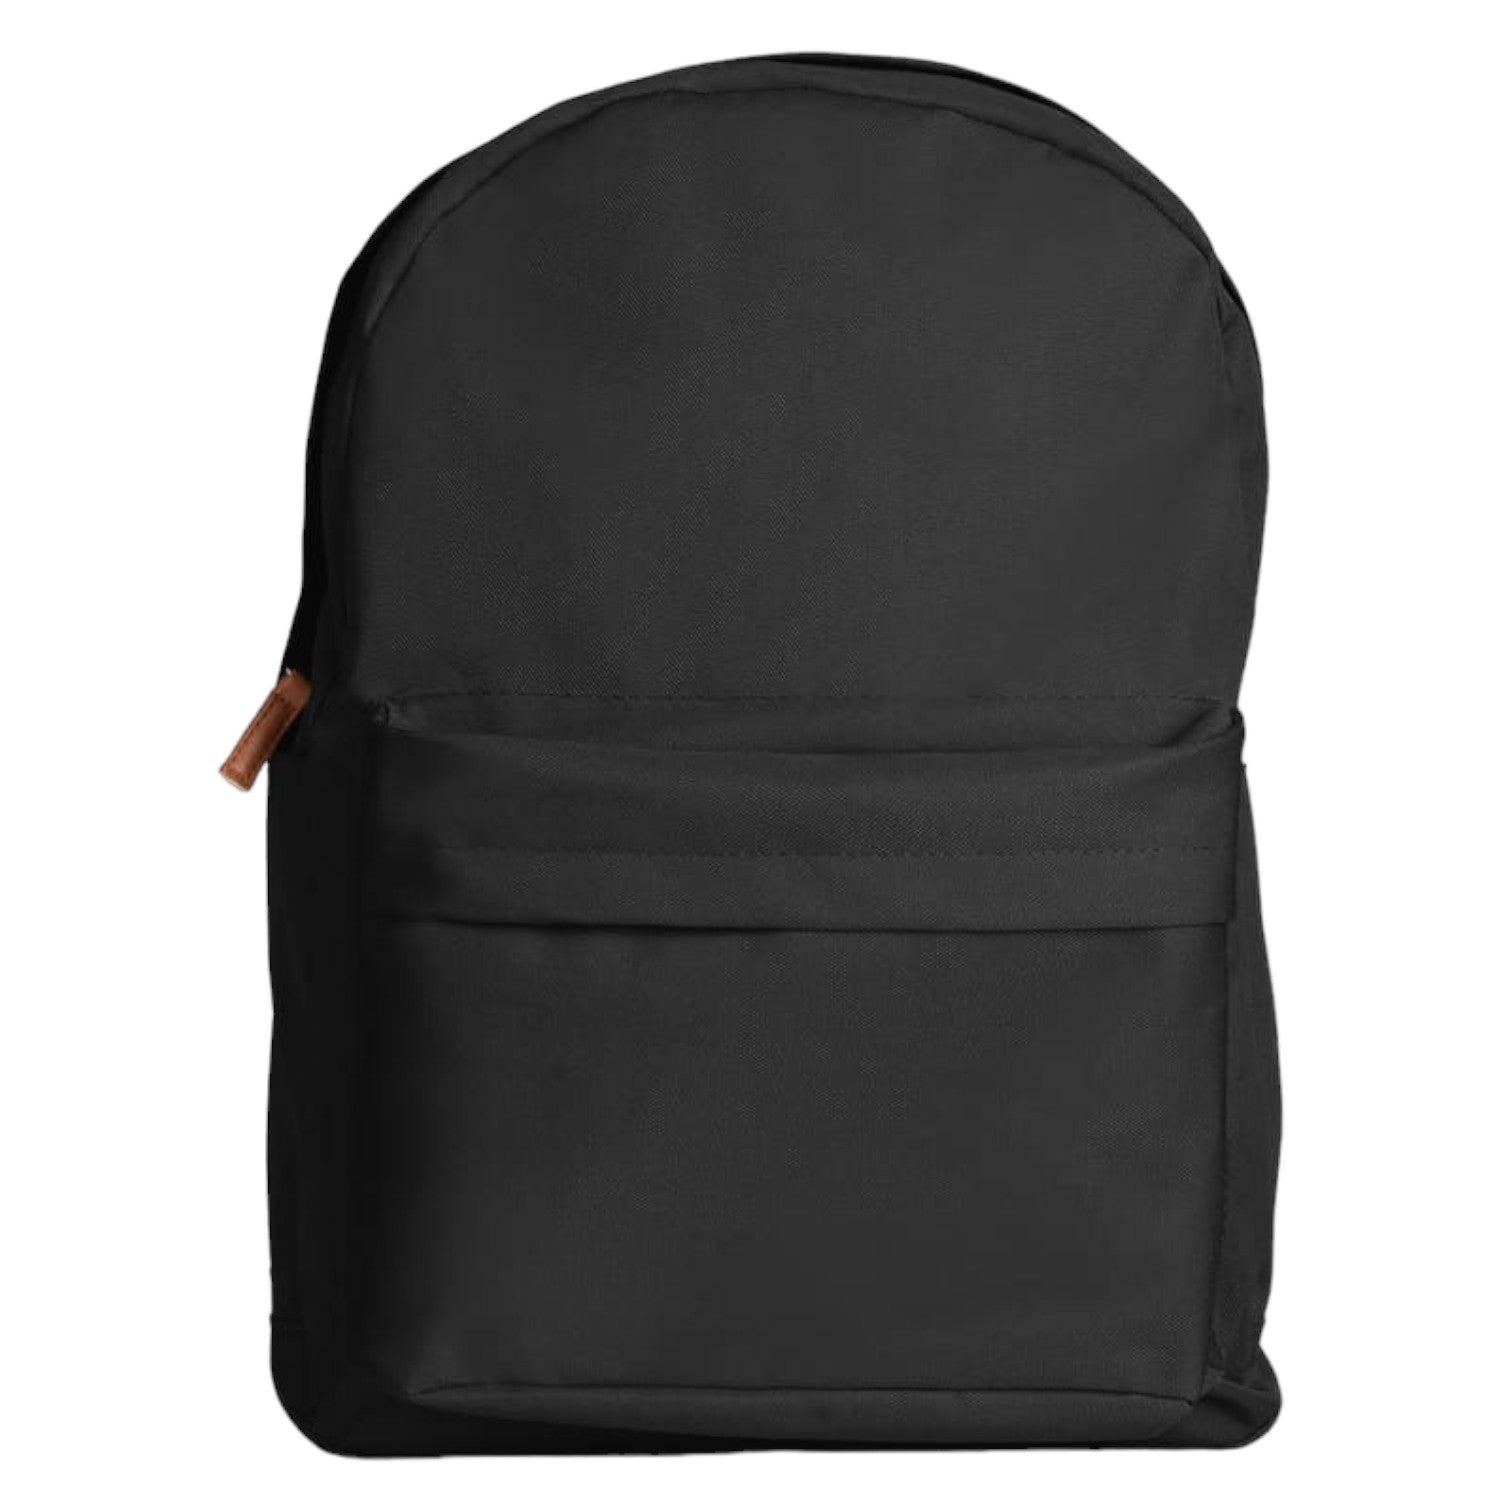 900D Polyester Backpack - Black